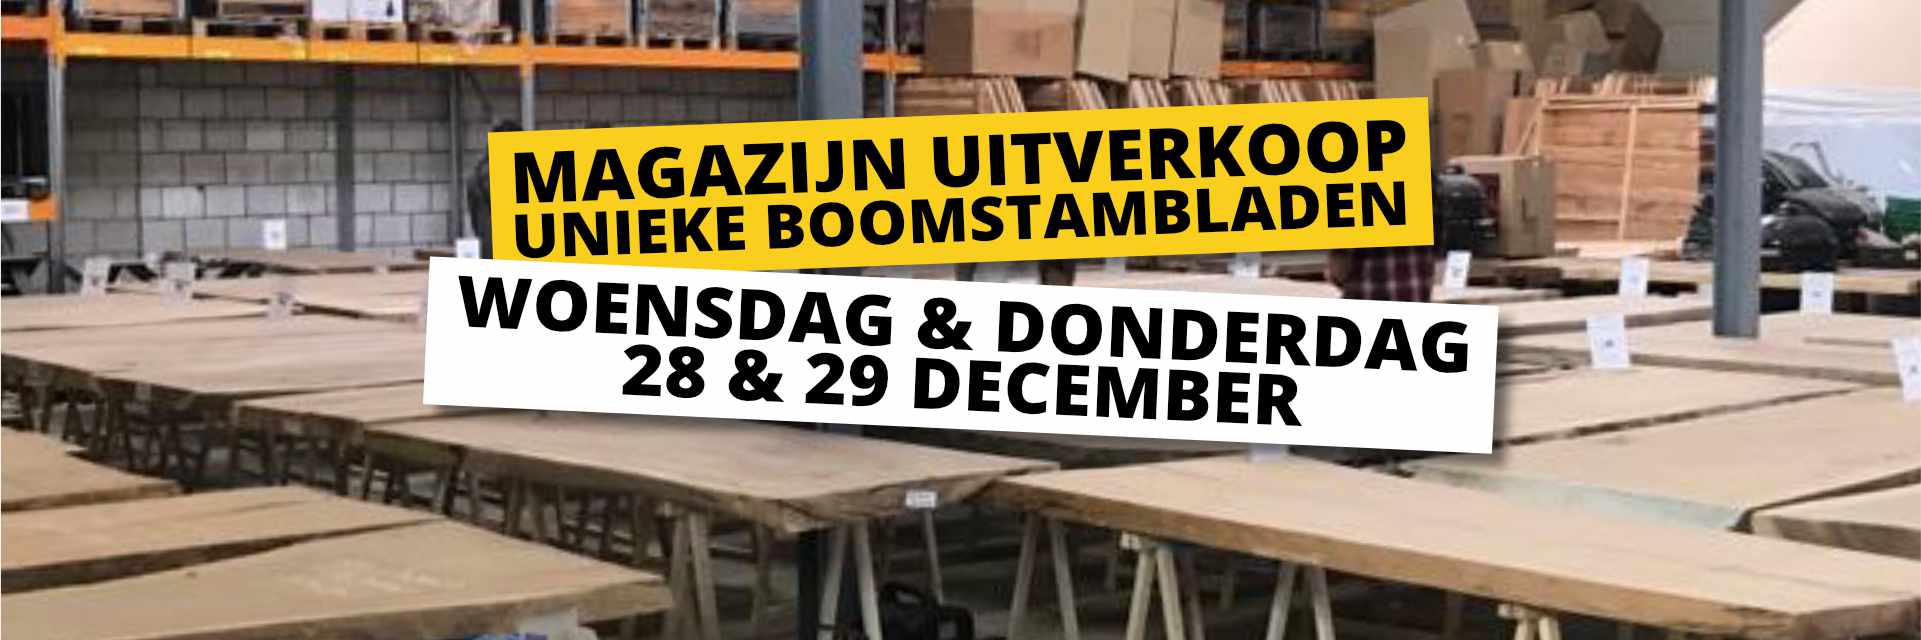 slagader Winkelcentrum rol Uitverkoop Boomstambladen | Haco.nu